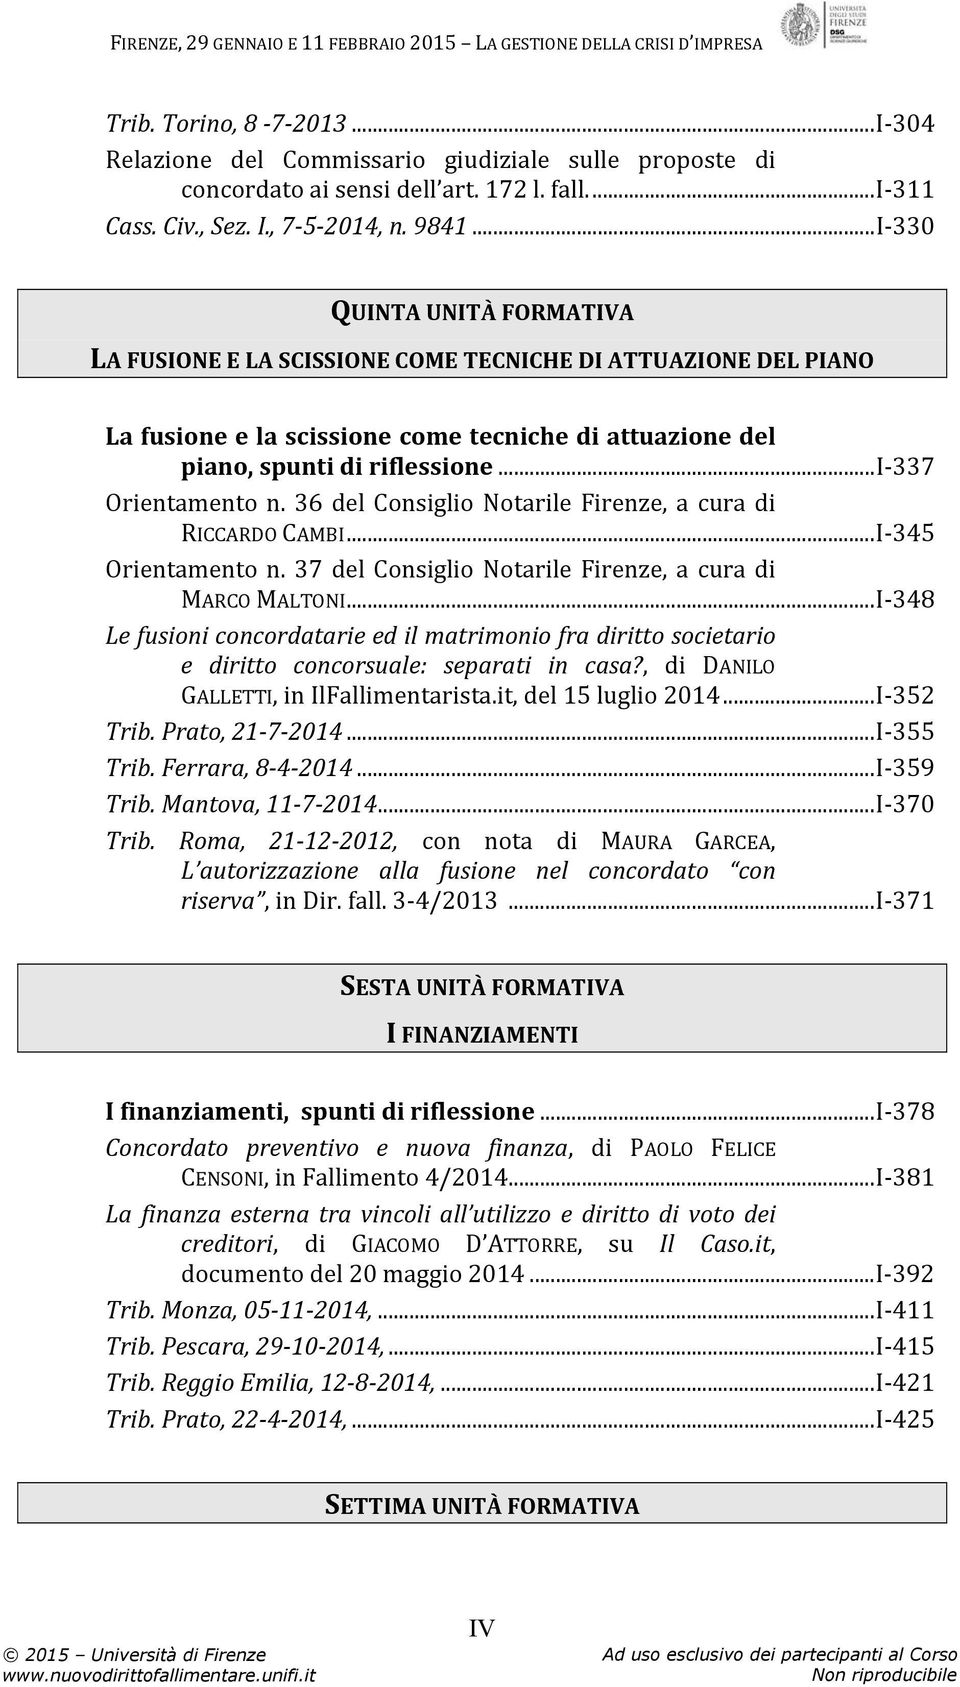 ..i-337 Orientamento n. 36 del Consiglio Notarile Firenze, a cura di RICCARDO CAMBI...I-345 Orientamento n. 37 del Consiglio Notarile Firenze, a cura di MARCO MALTONI.